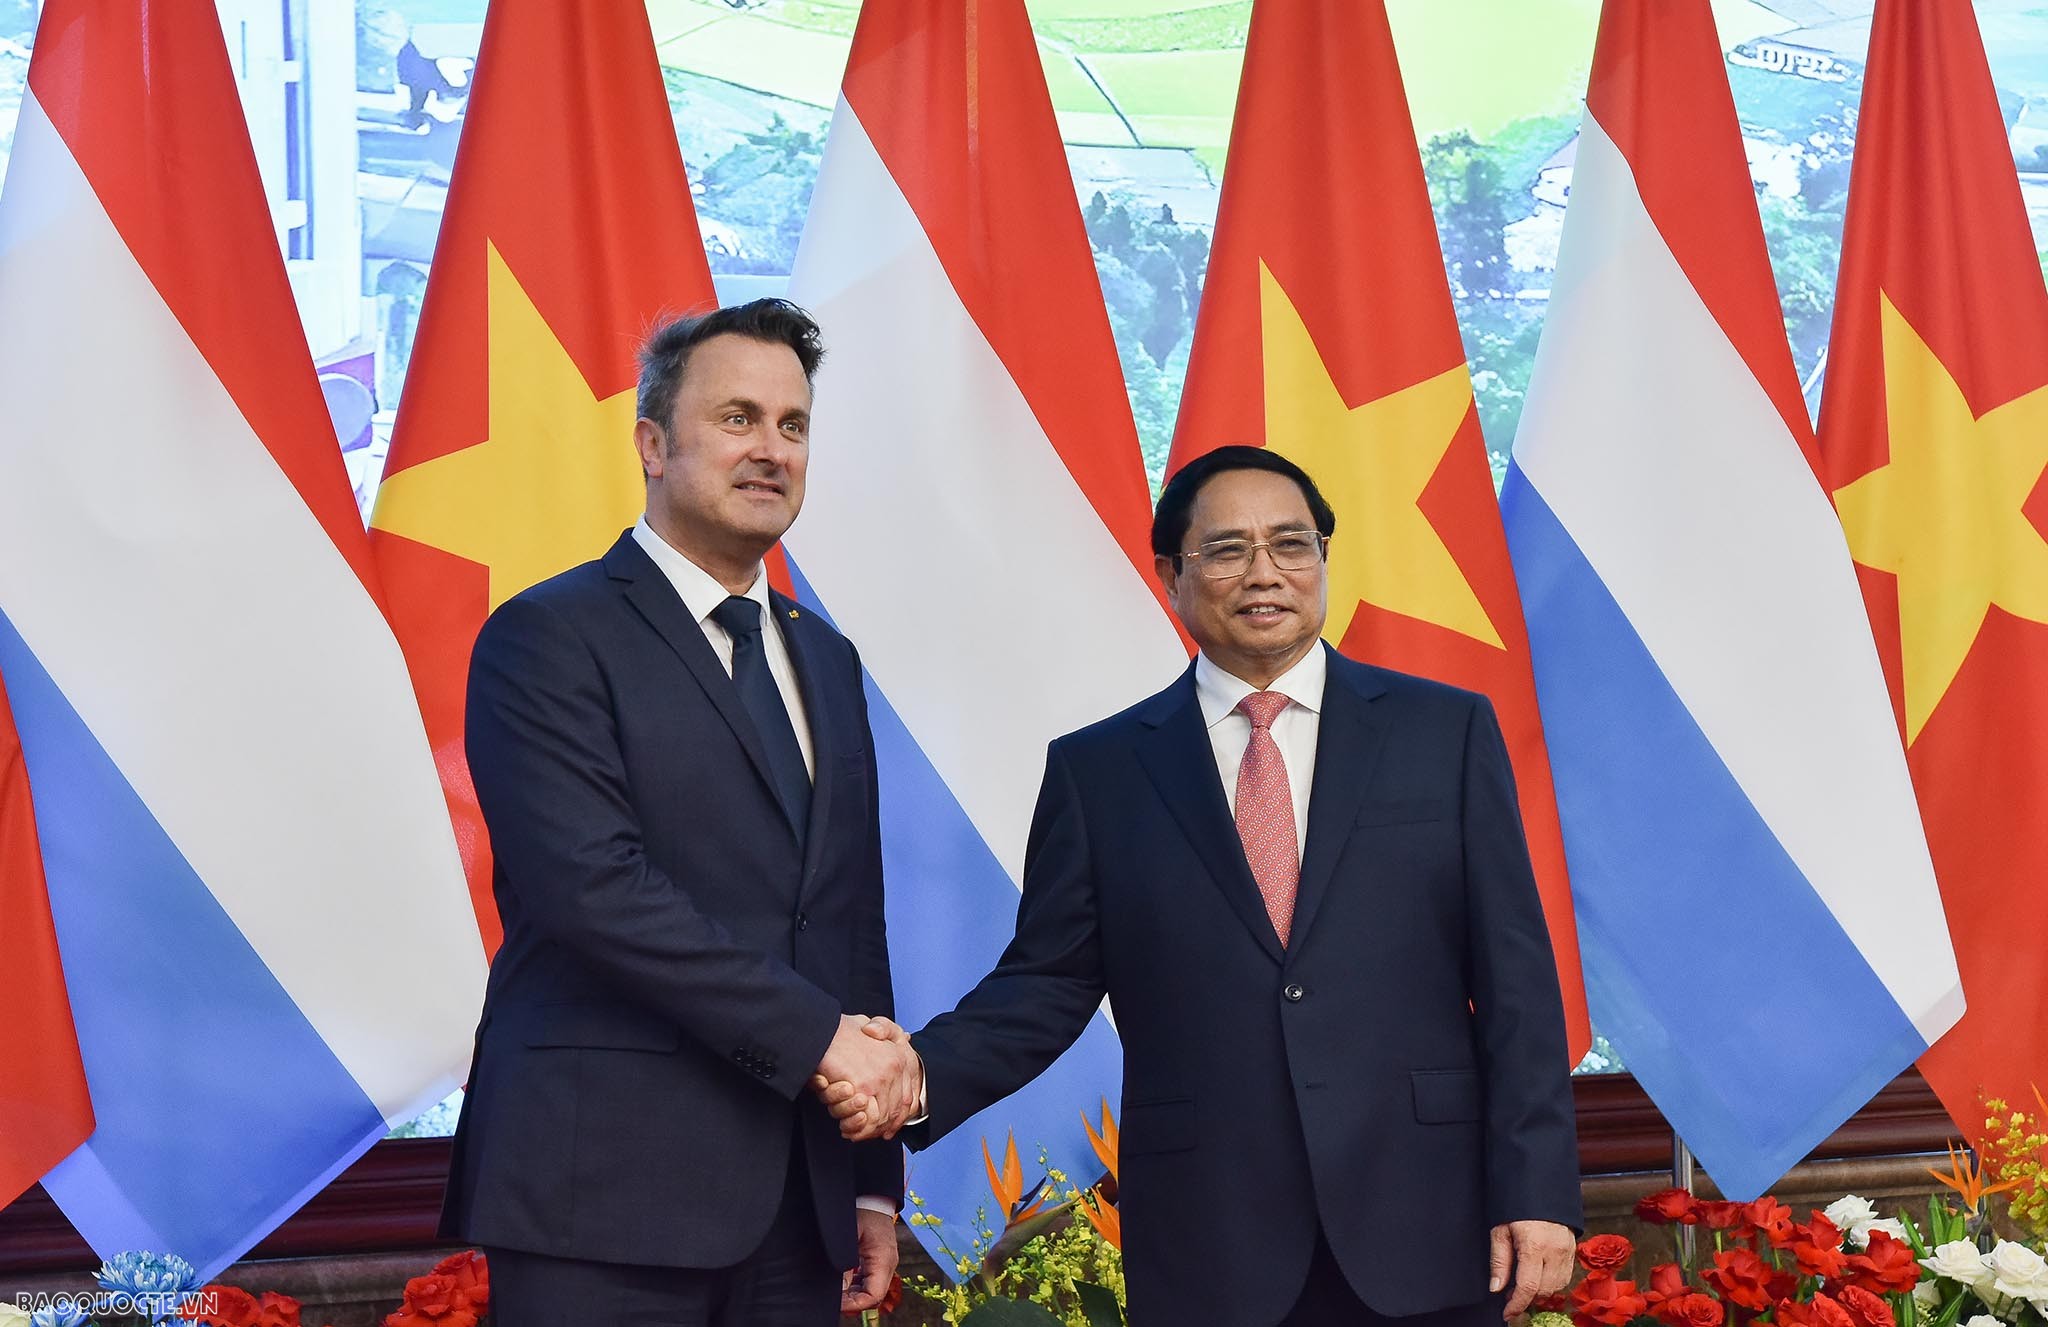 Điều này một lần nữa thể hiện sự quan tâm của bạn đối với Việt Nam, cũng như thể hiện tình cảm của cá nhân Thủ tướng Luxembourg dành cho Việt Nam và với Thủ tướng Chính phủ Phạm Minh Chính.